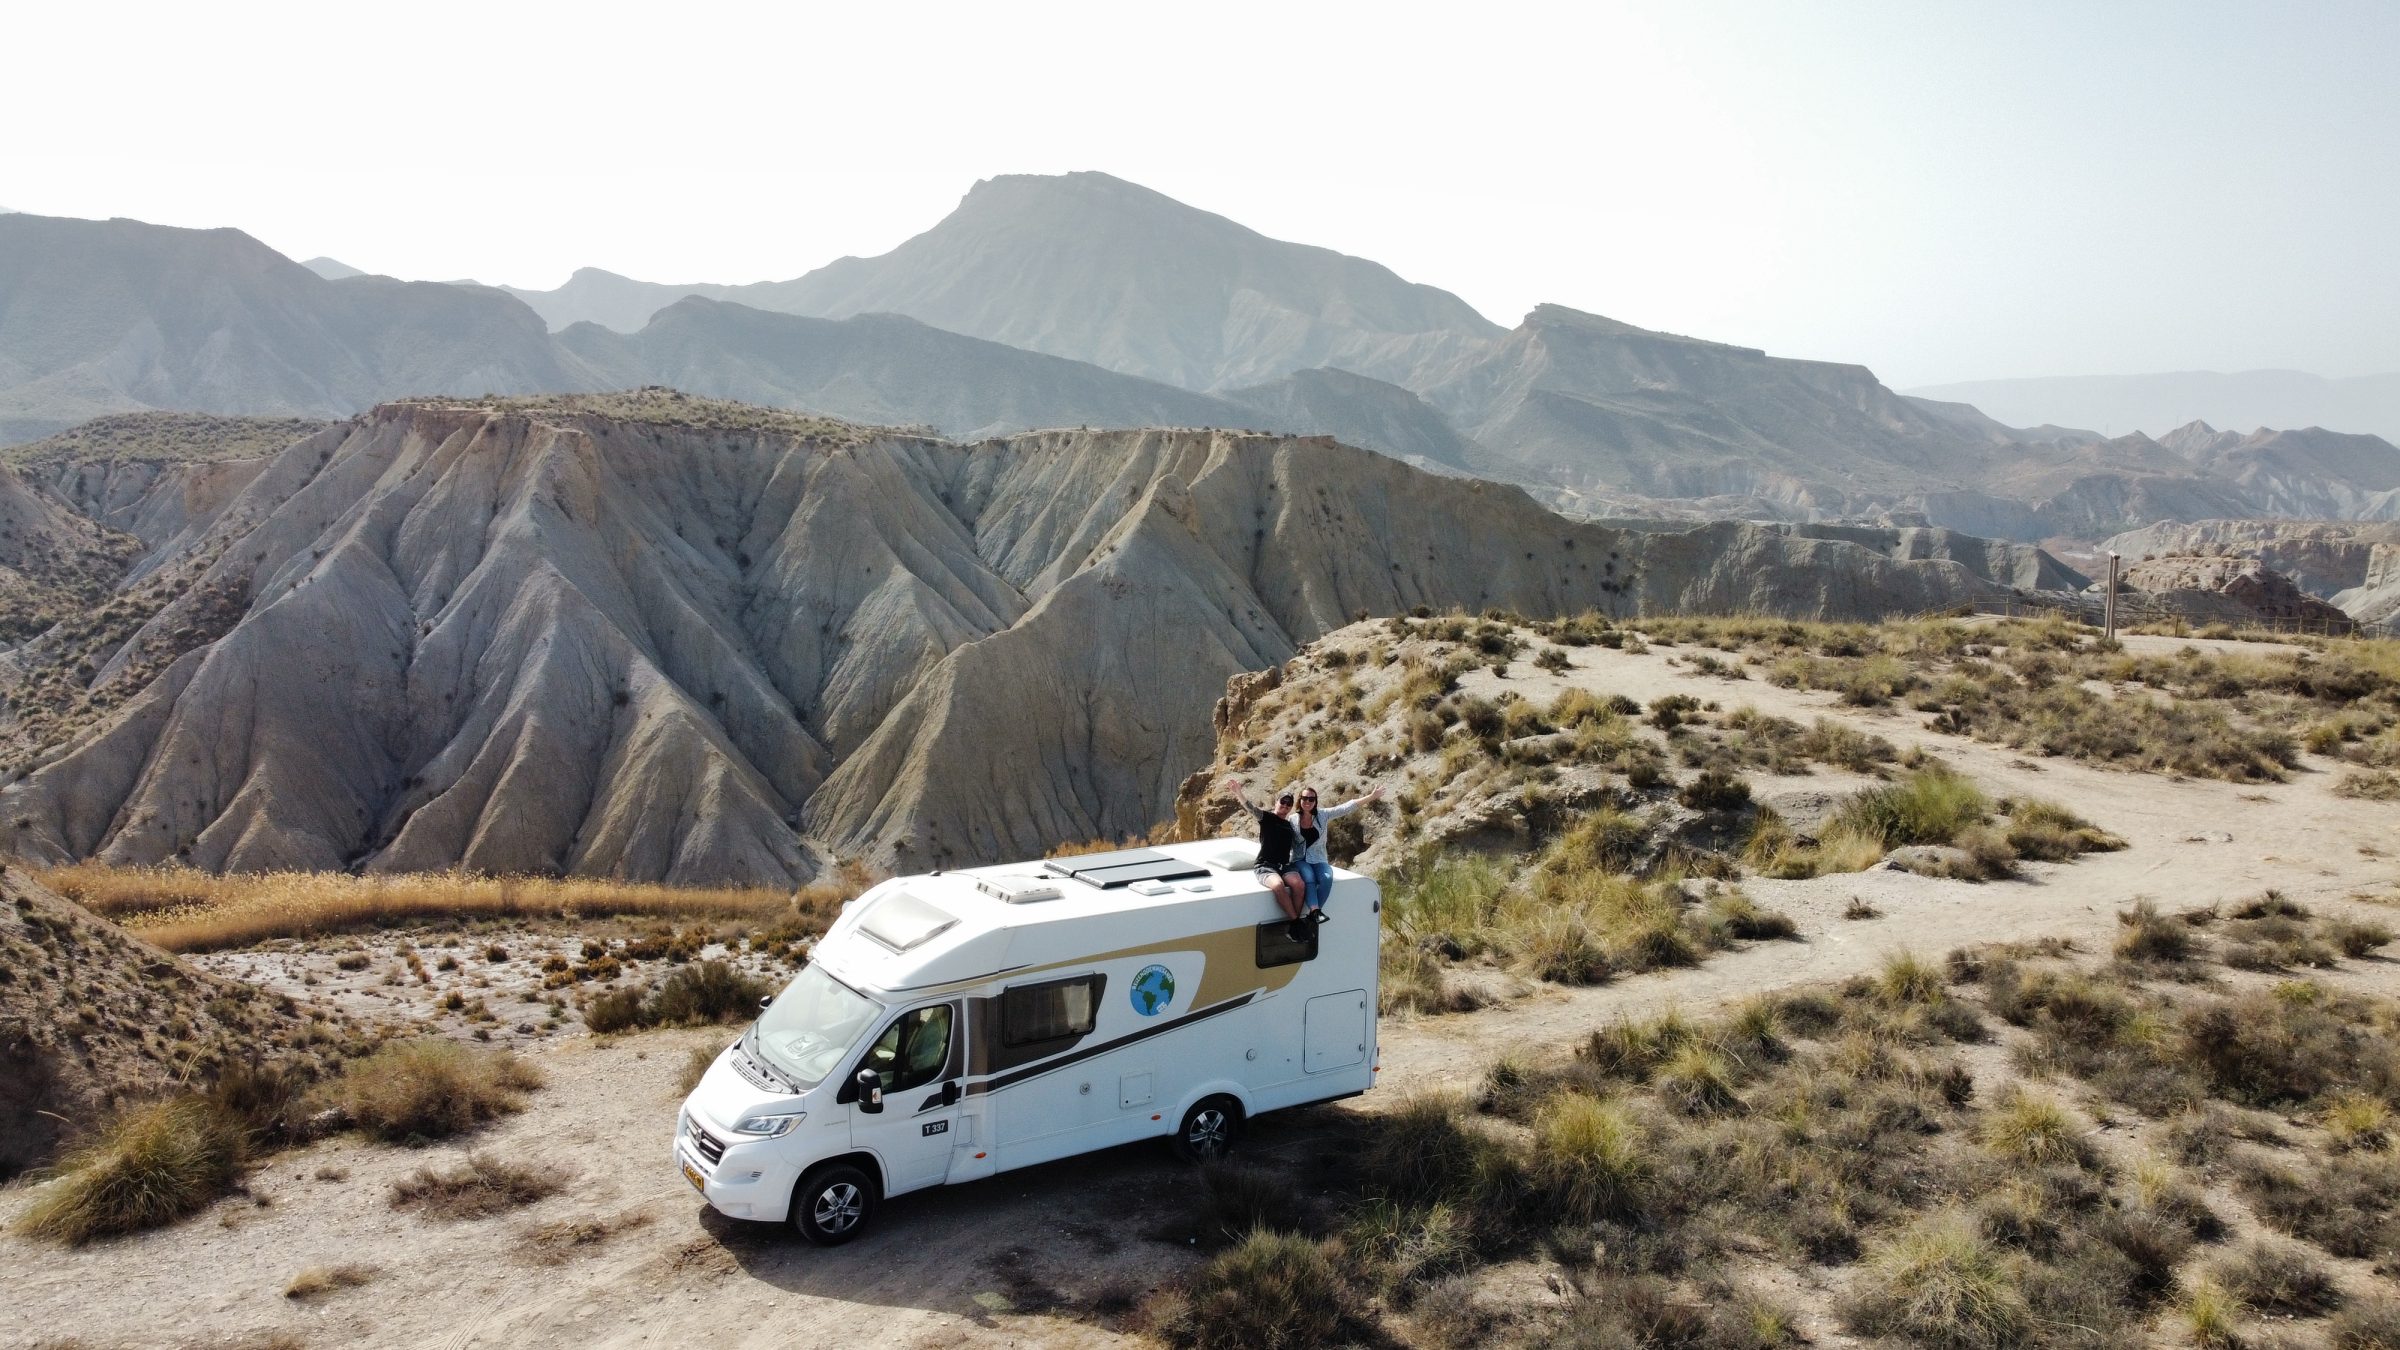 Le désert de Tabernas | Conseils et lieux d'intérêt pour les camping-cars dans le sud de l'Espagne